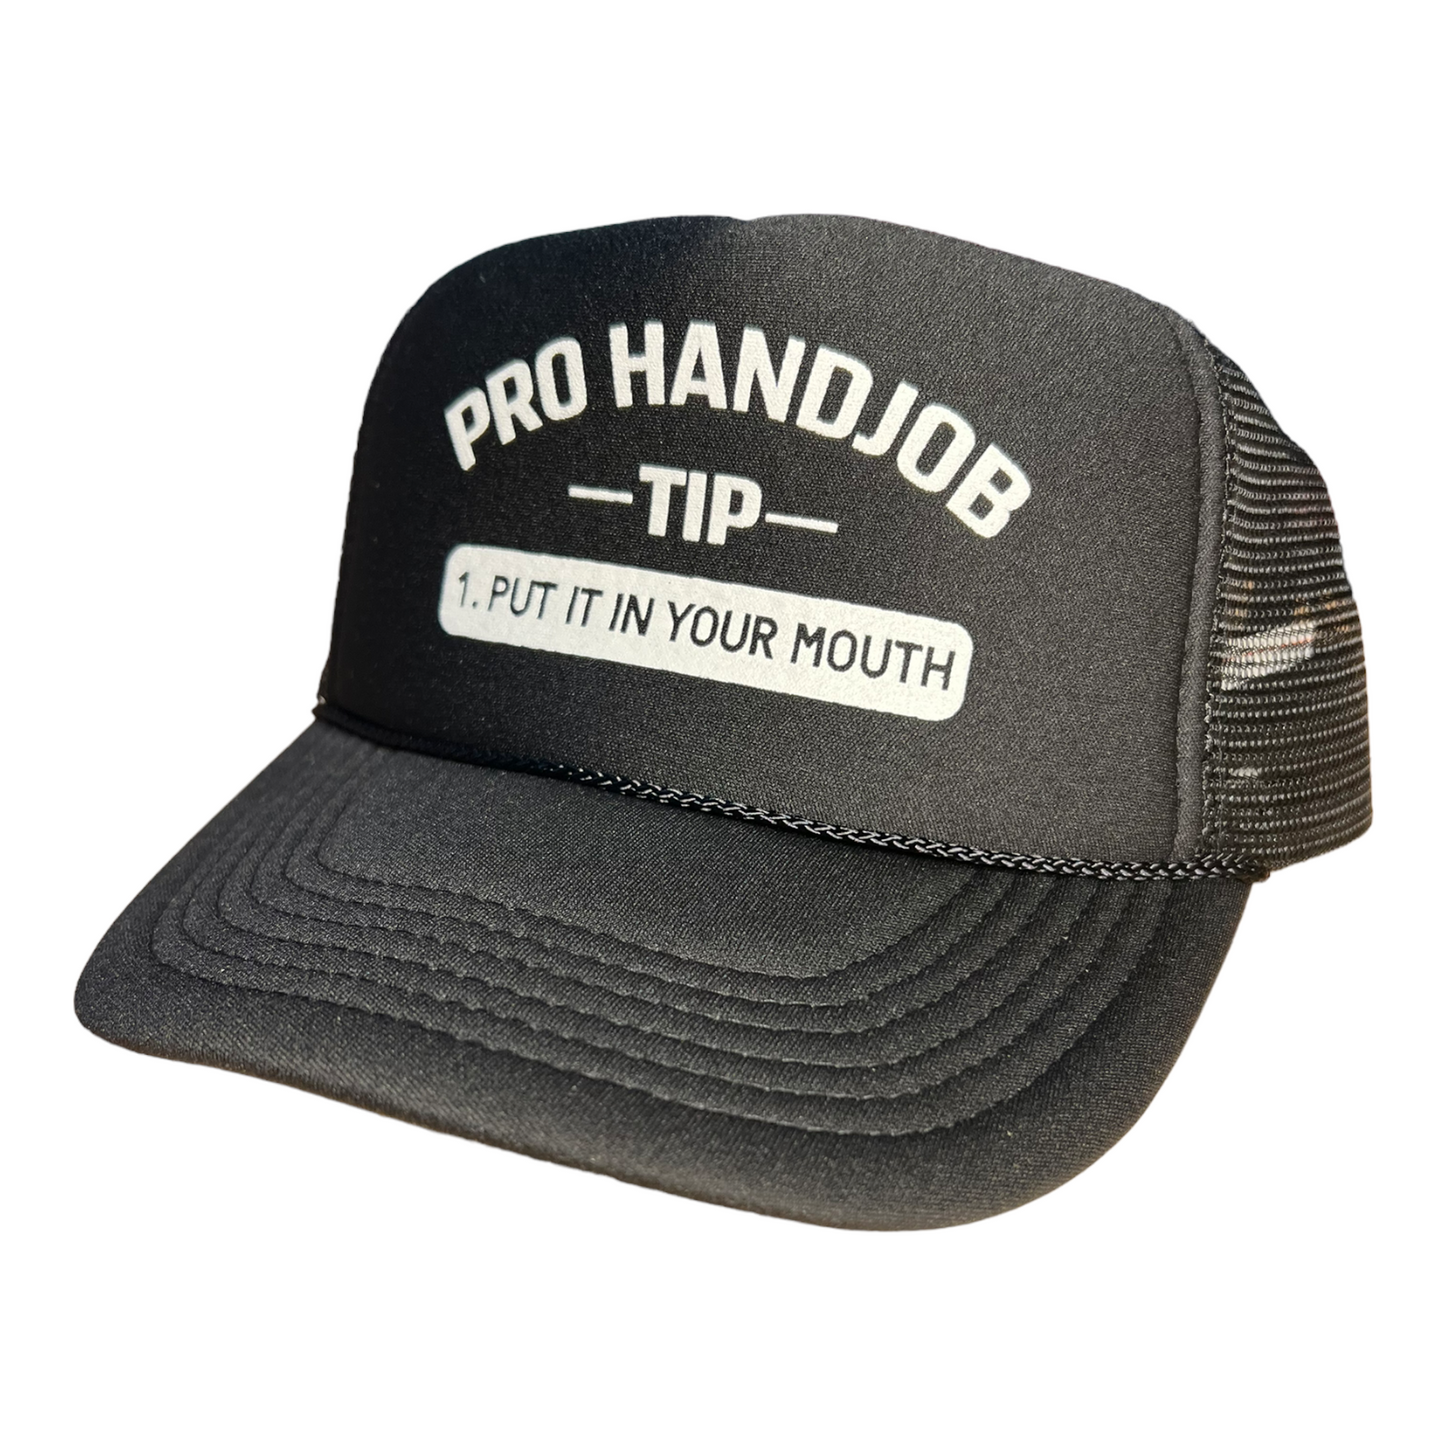 Pro Handjob Tip Trucker Hat Funny Trucker Hat Black